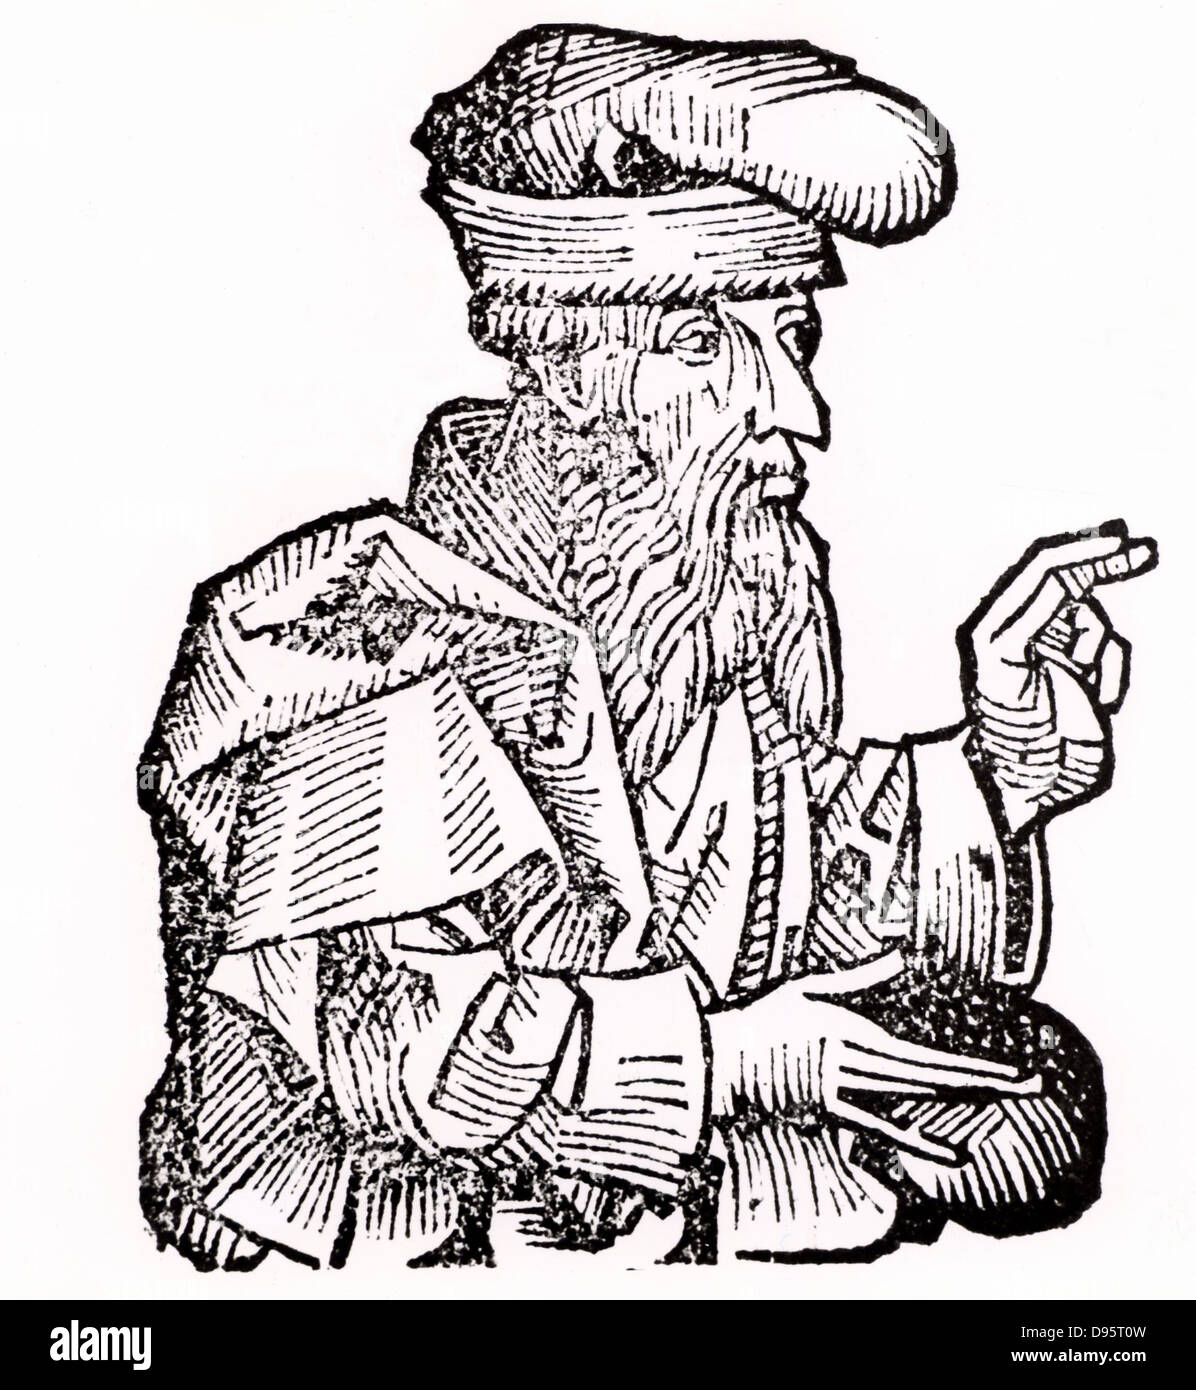 Platon (428-348 v. Chr.) c Antiken griechischen Philosophen. Holzschnitt aus "Liber chronicarum mundi" (Nürnberg Chronik) von Hartmann Schedel (Nürnberg), 1493. Stockfoto